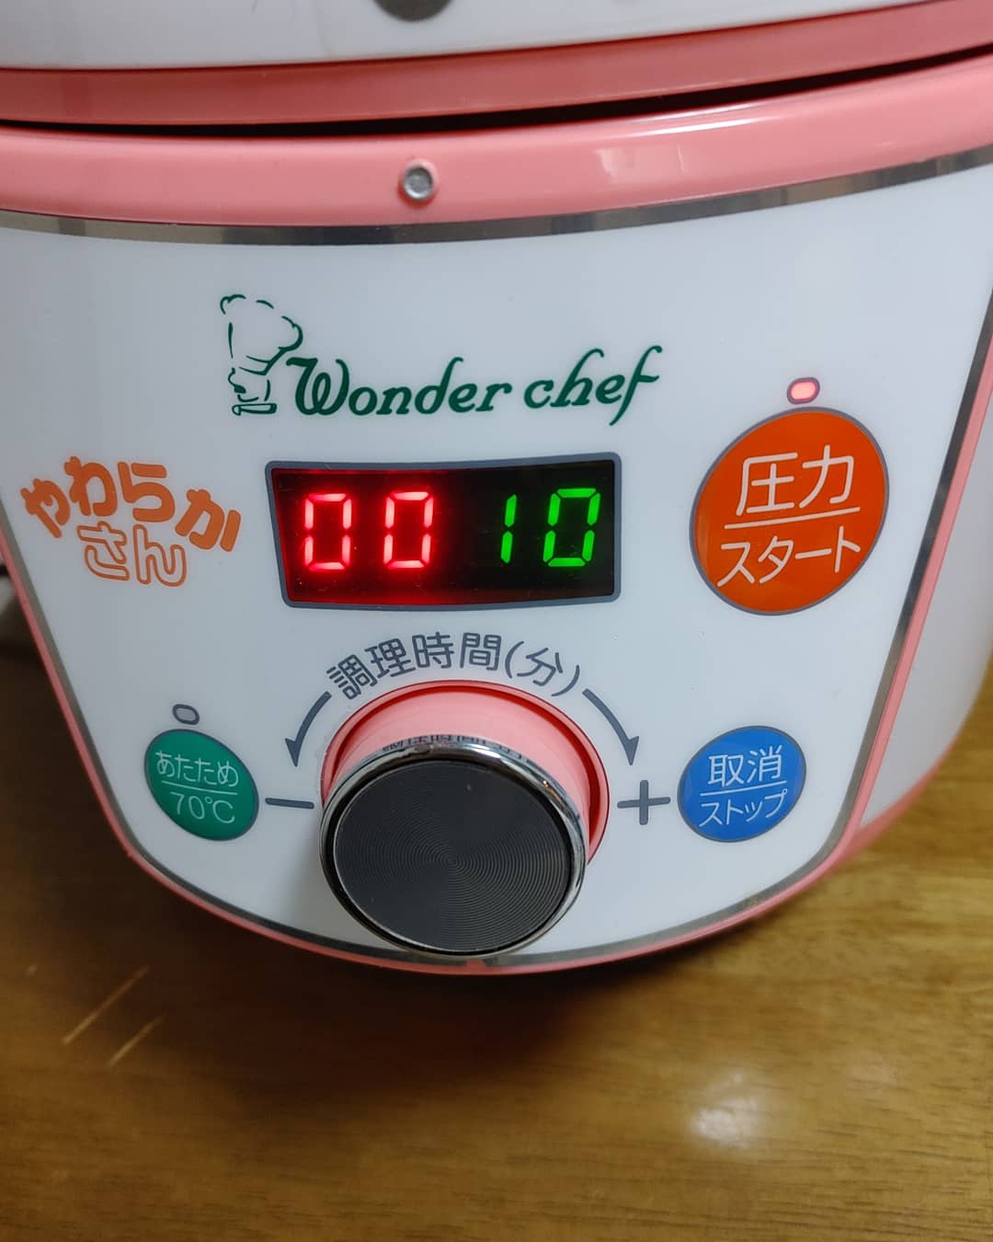 Wonder chef(ワンダーシェフ) 家庭用マイコン電気圧力鍋 3L OEDE30「やわらかさん」を使ったまなみんさんのクチコミ画像1